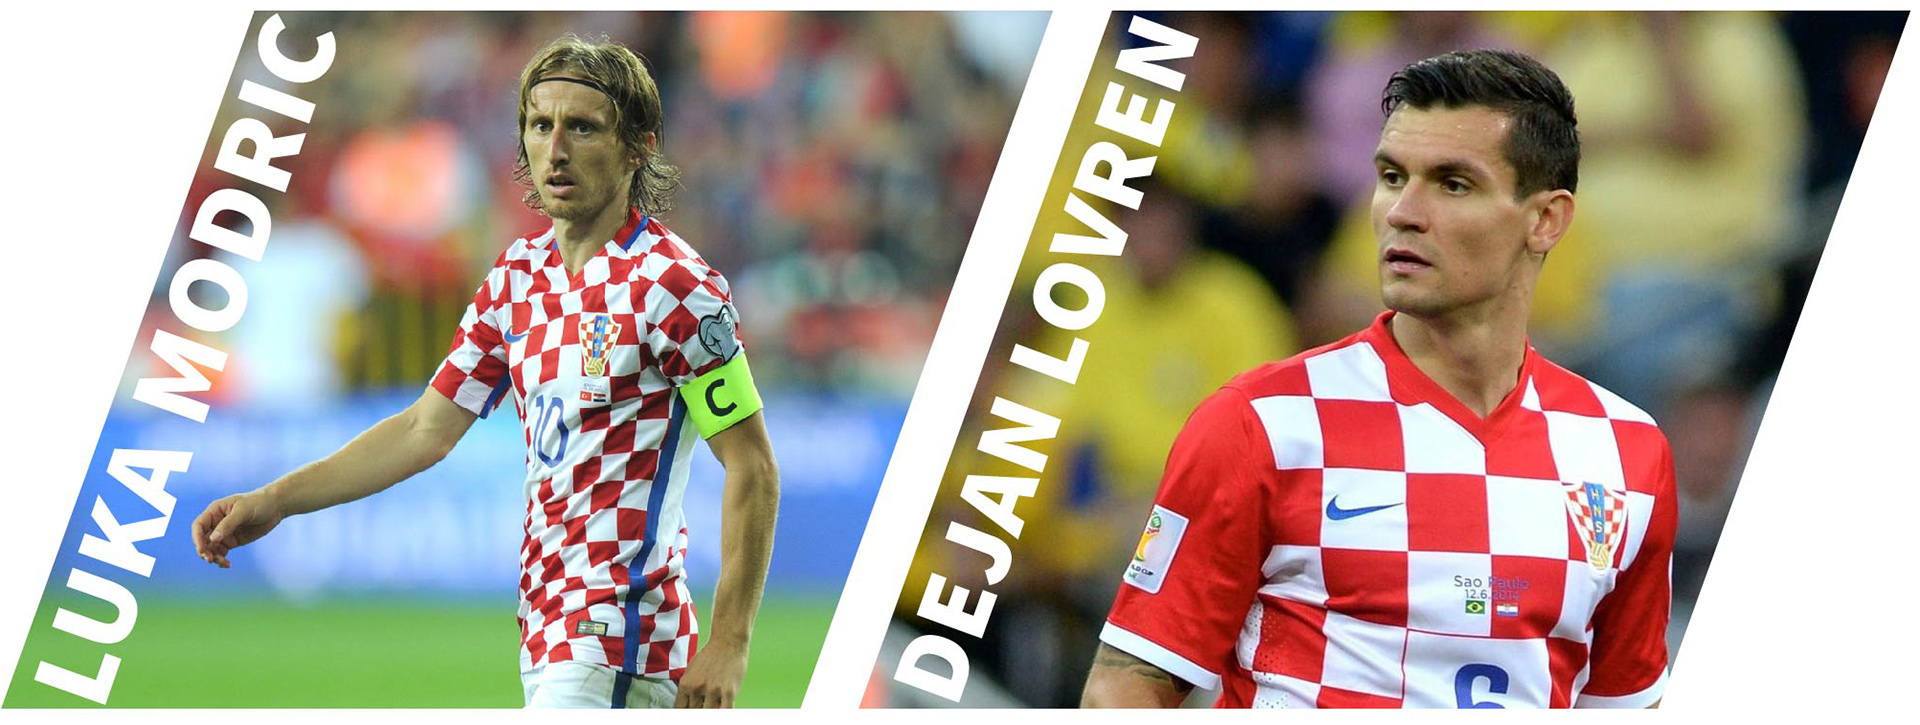 Croatia - Modric chung kết World Cup: Bóng đá hắc ám & bản hùng ca của kẻ mang tội - 9